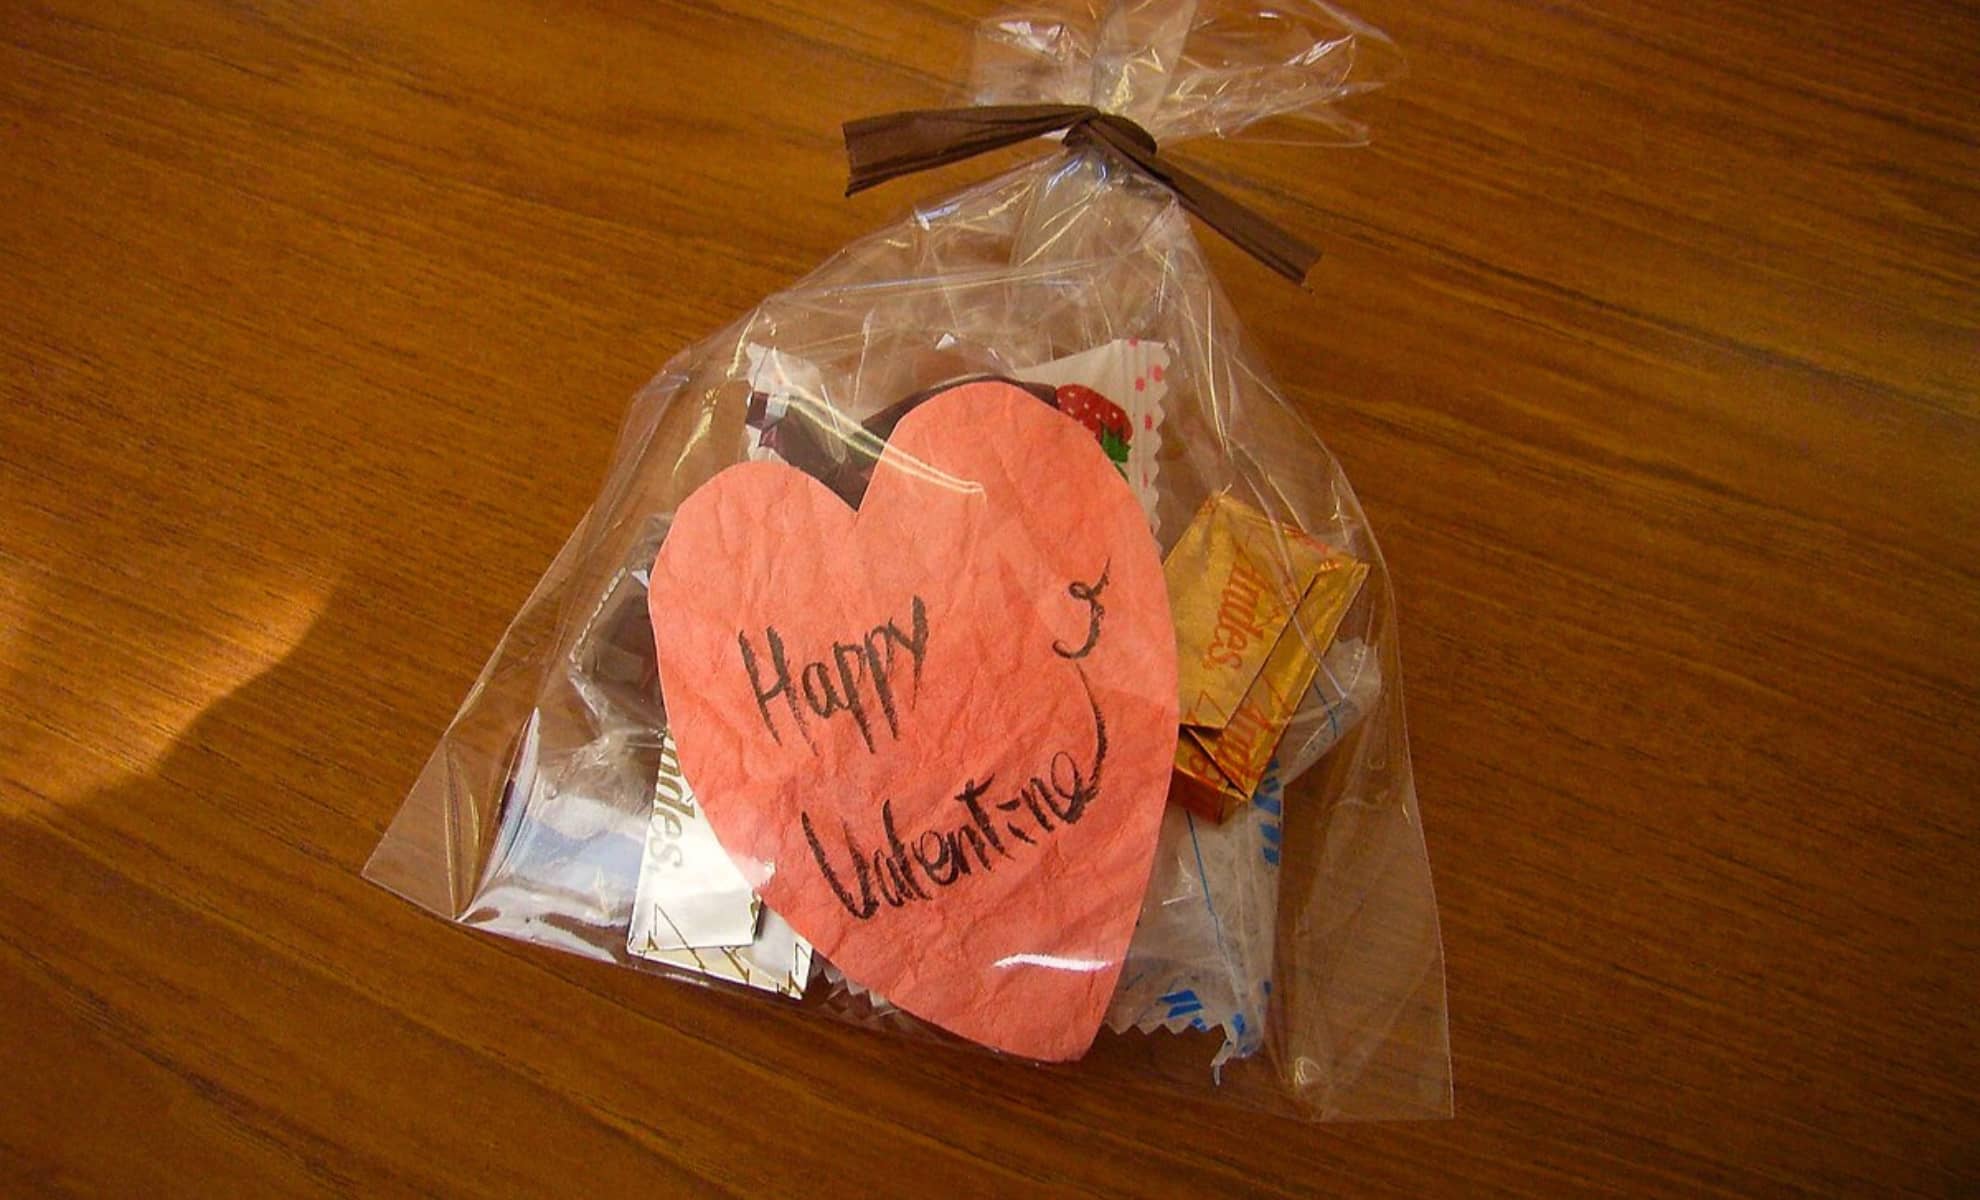 Le giri choco, offrir du chocolat à son partenaire ou collègues masculins au Japon